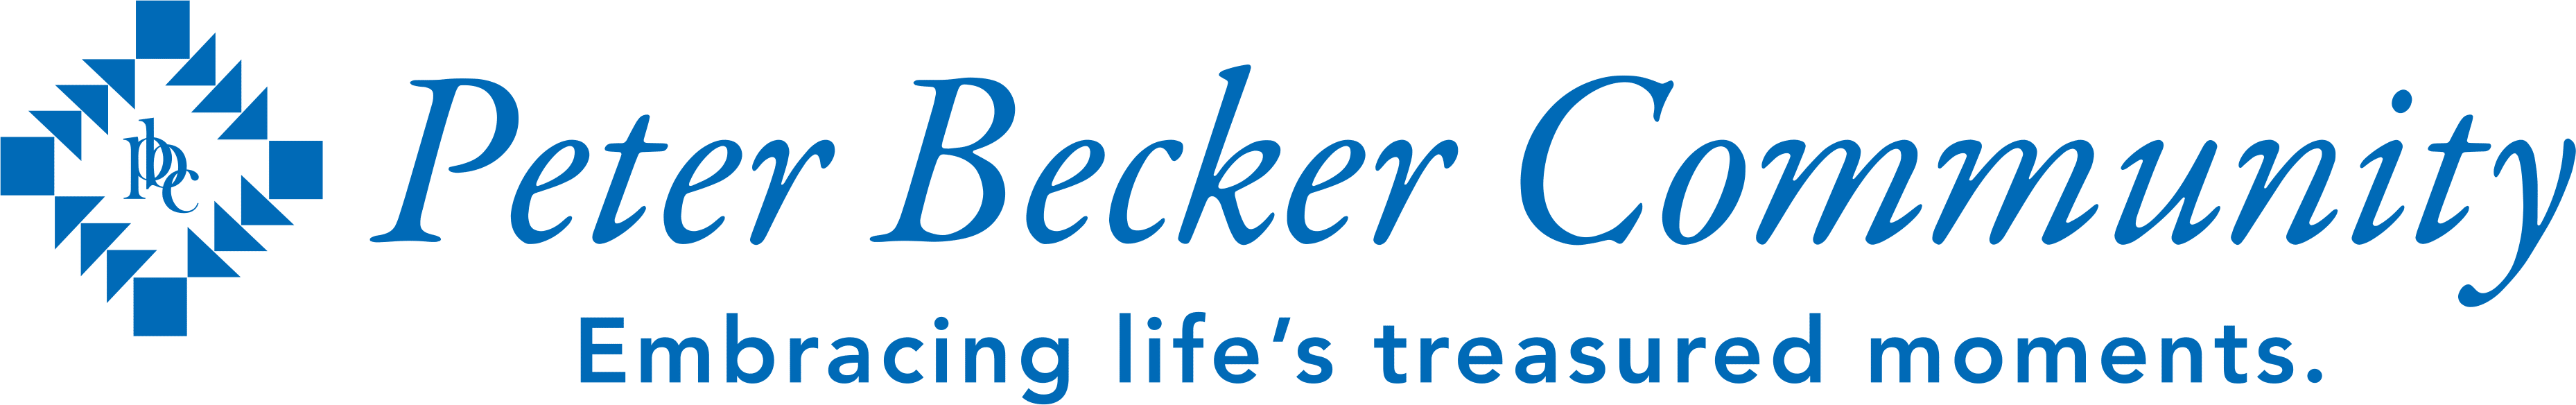 Peter Becker Community